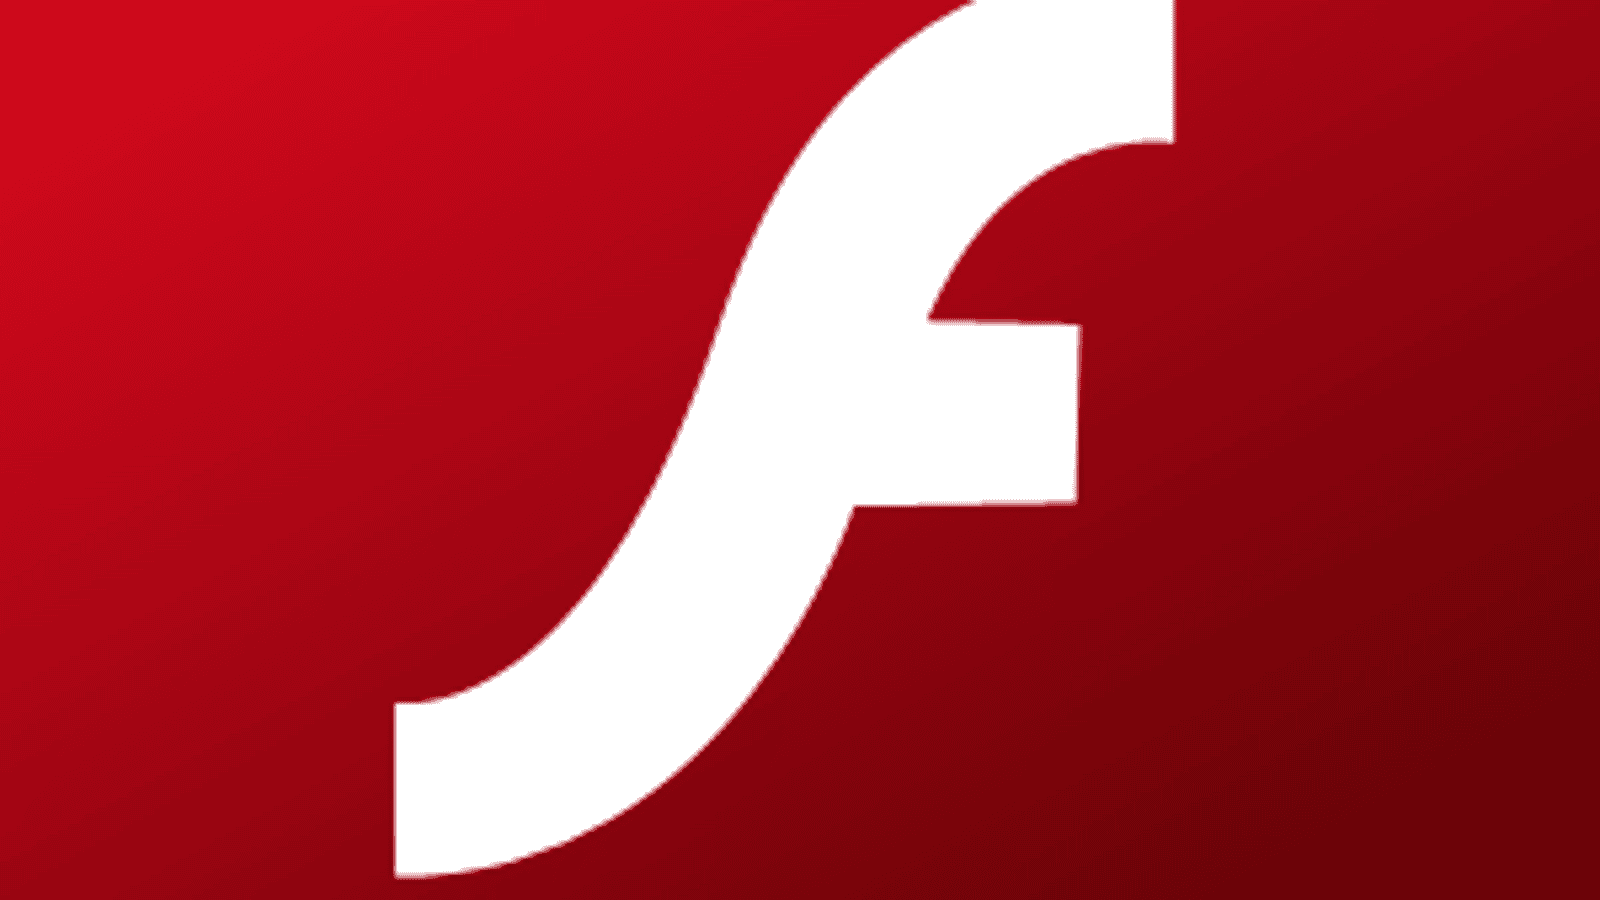 adobe flash player version 10 free download